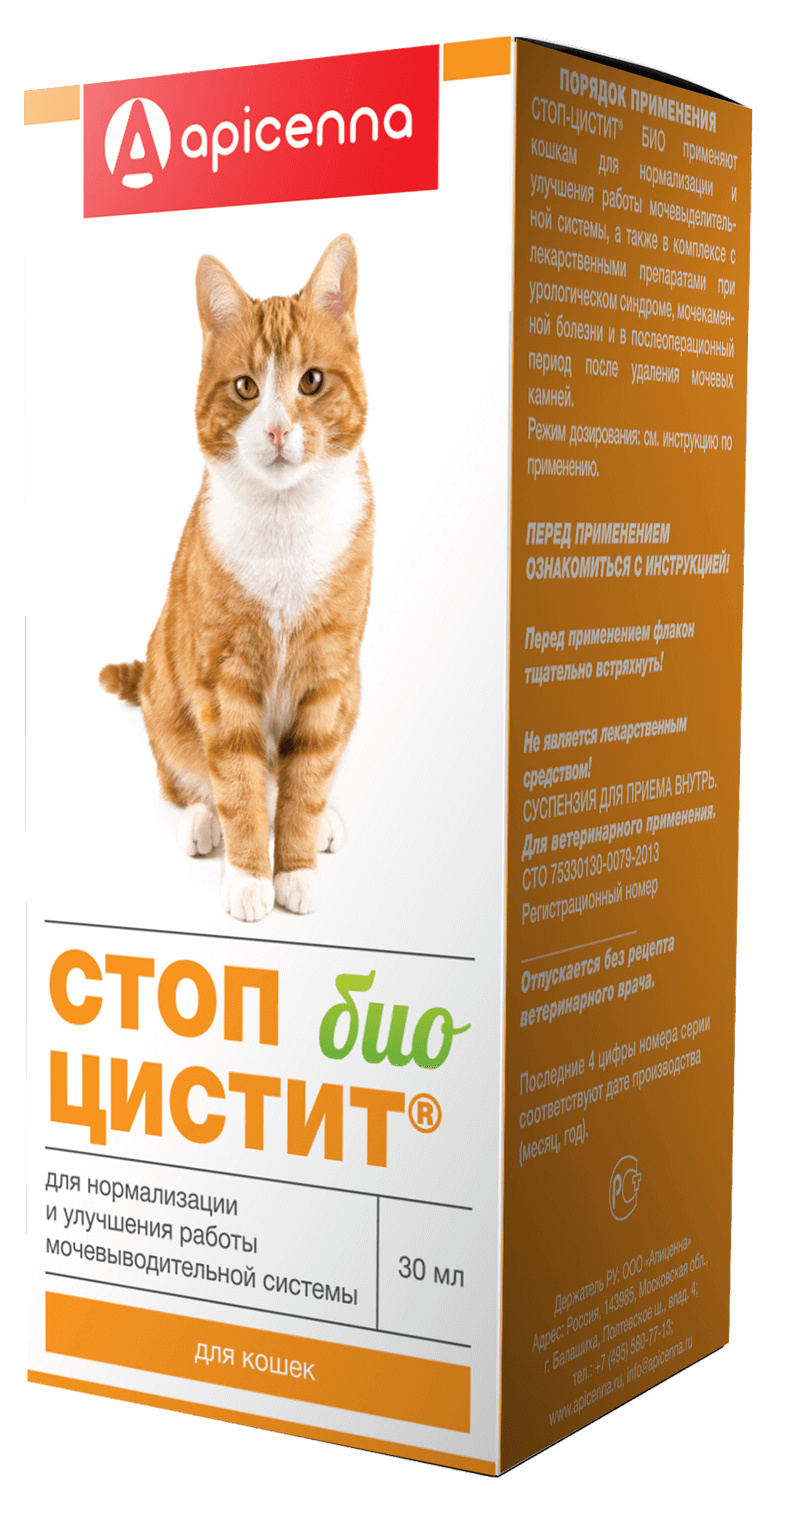 Apicenna Apicenna стоп цистит БИО для кошек: лечение и профилактика МКБ (суспензия) (30 г) фотографии